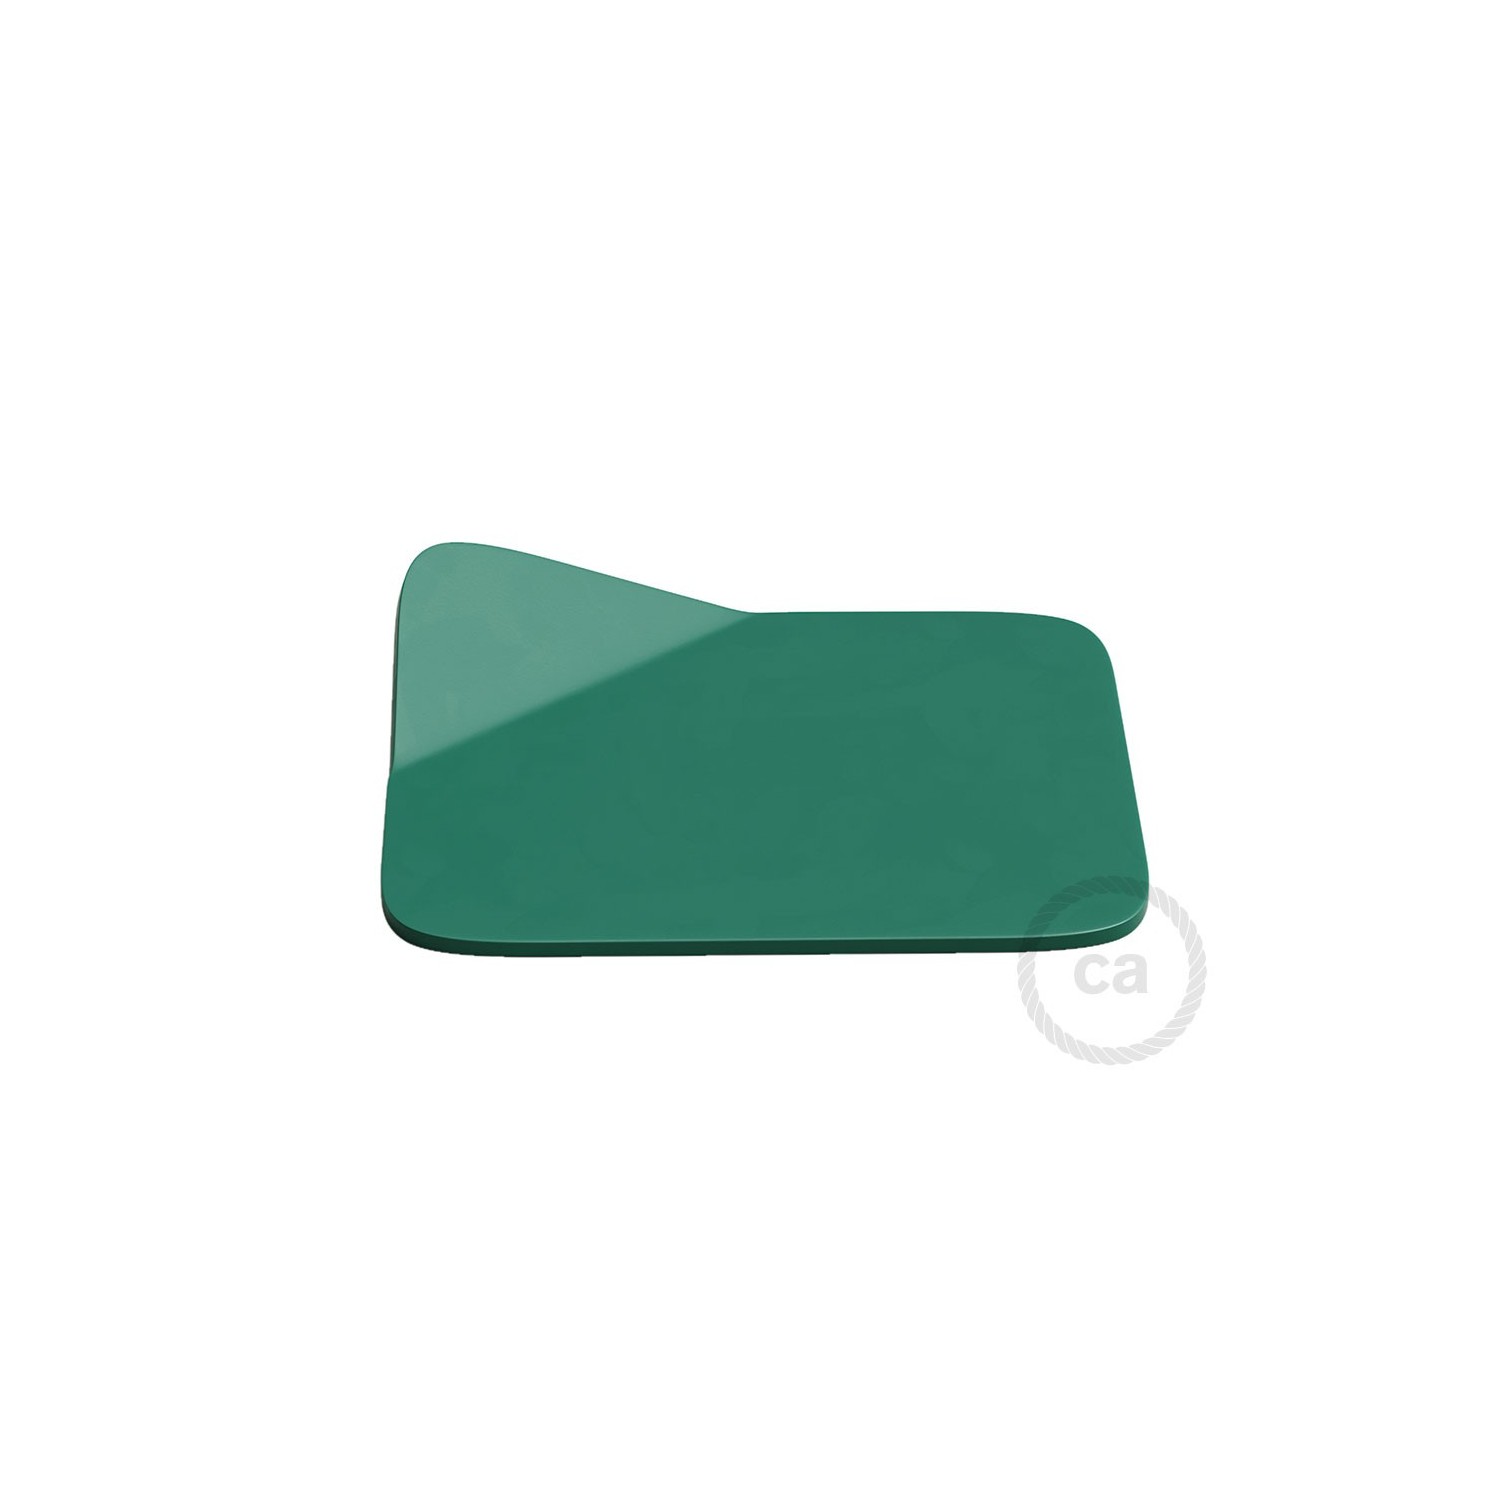 Magnetico®-Base Verde, base metalica superficie plana para Magnetico®-Plug